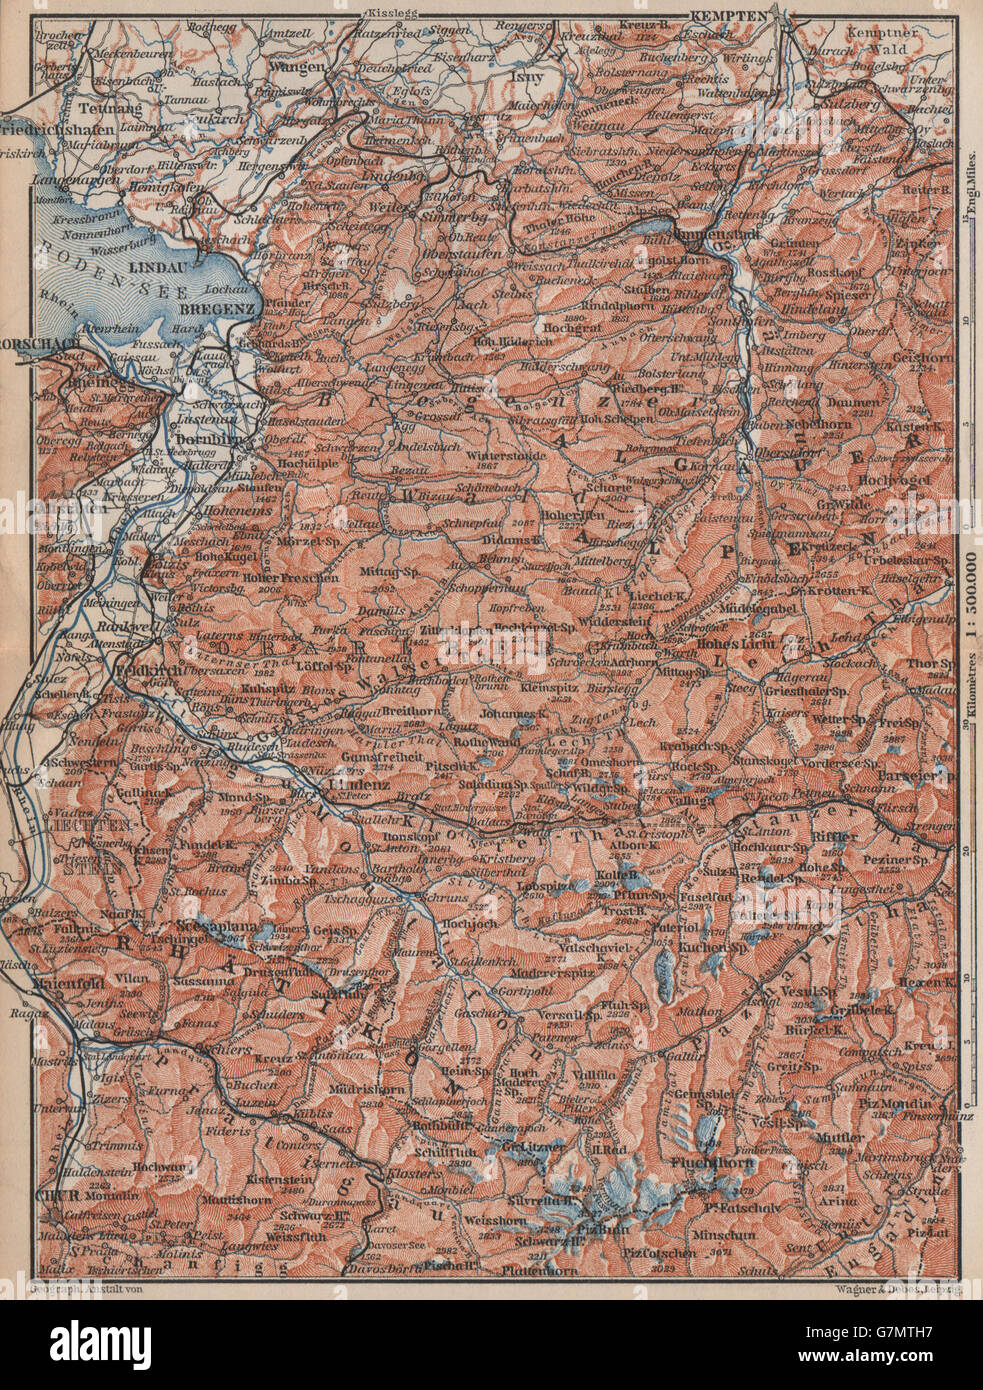 VORARLBERG & BREGENZER WALD. Bludenz St Anton Zürs Lech See Ischgl, 1899 map Stock Photo